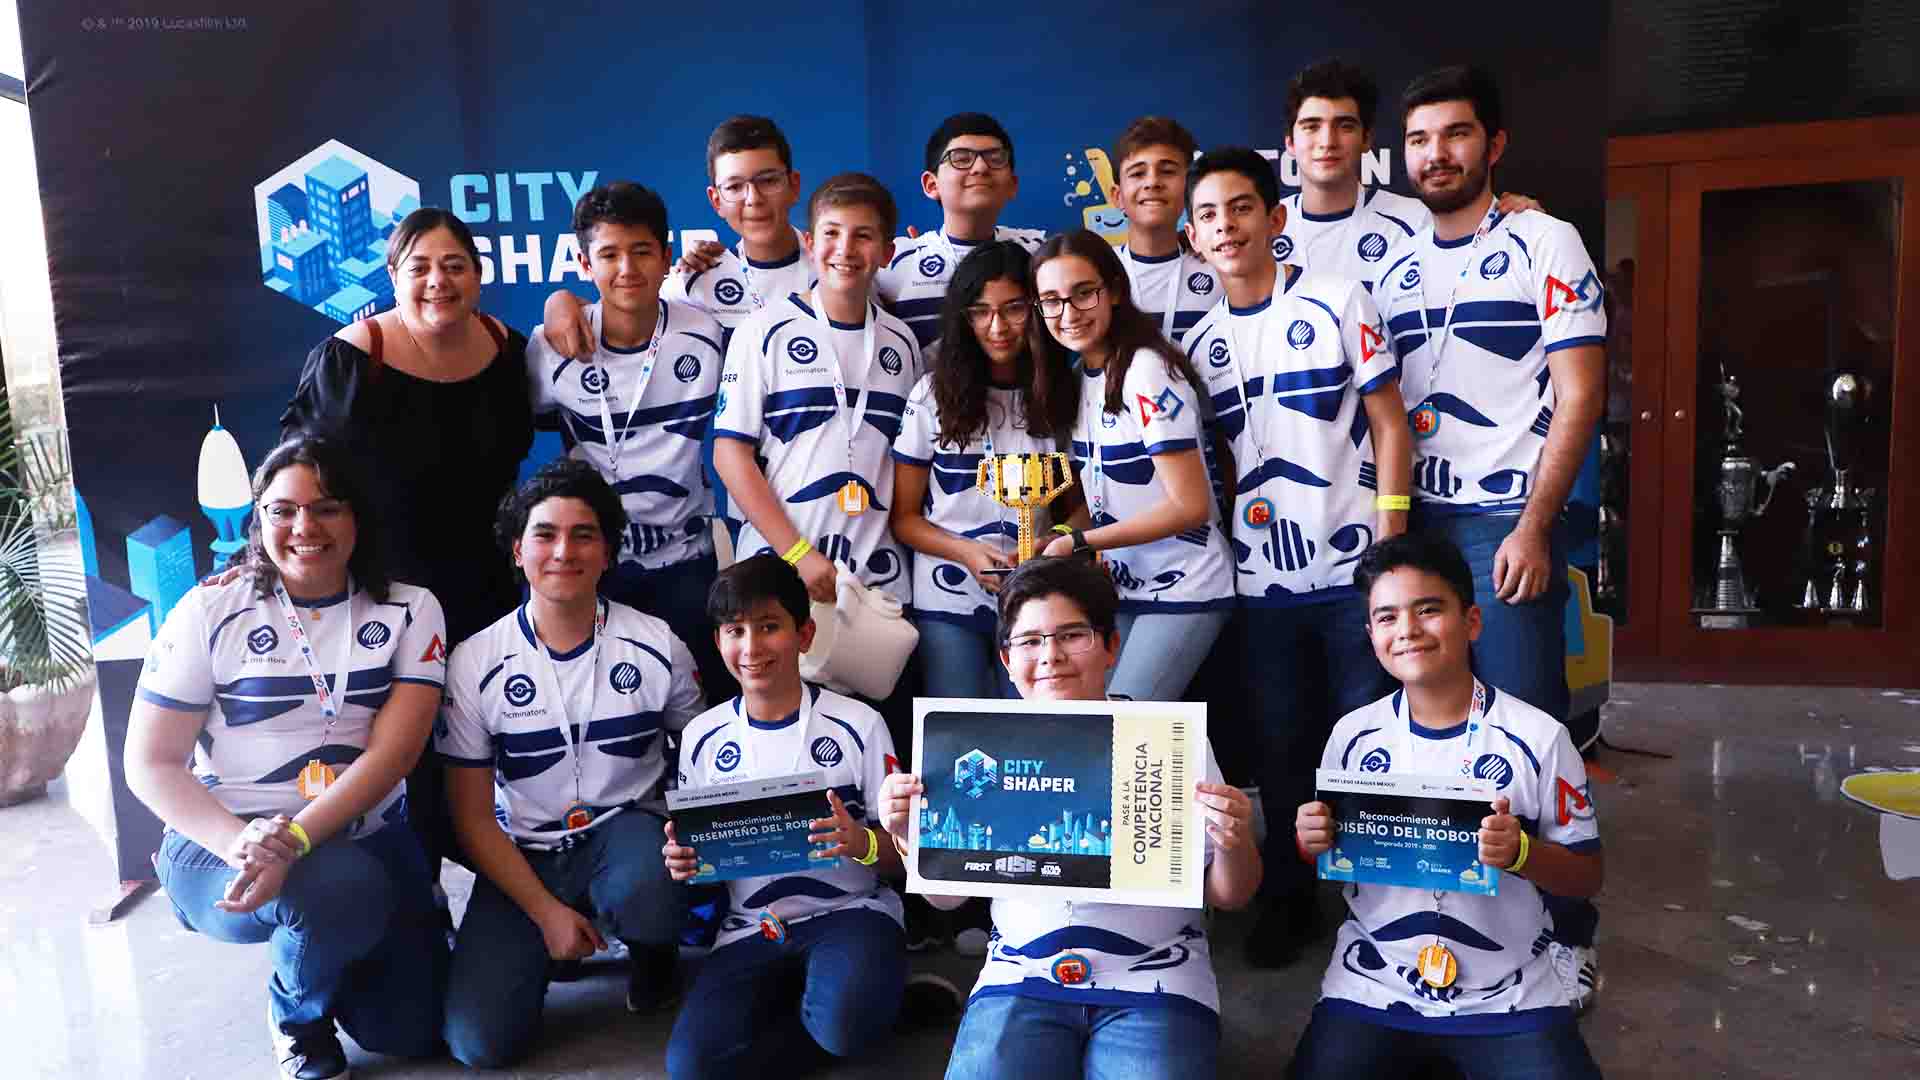 TECMINATORS equipo de robótica de la Secundaria del Tecnológico de Monterrey campus Laguna